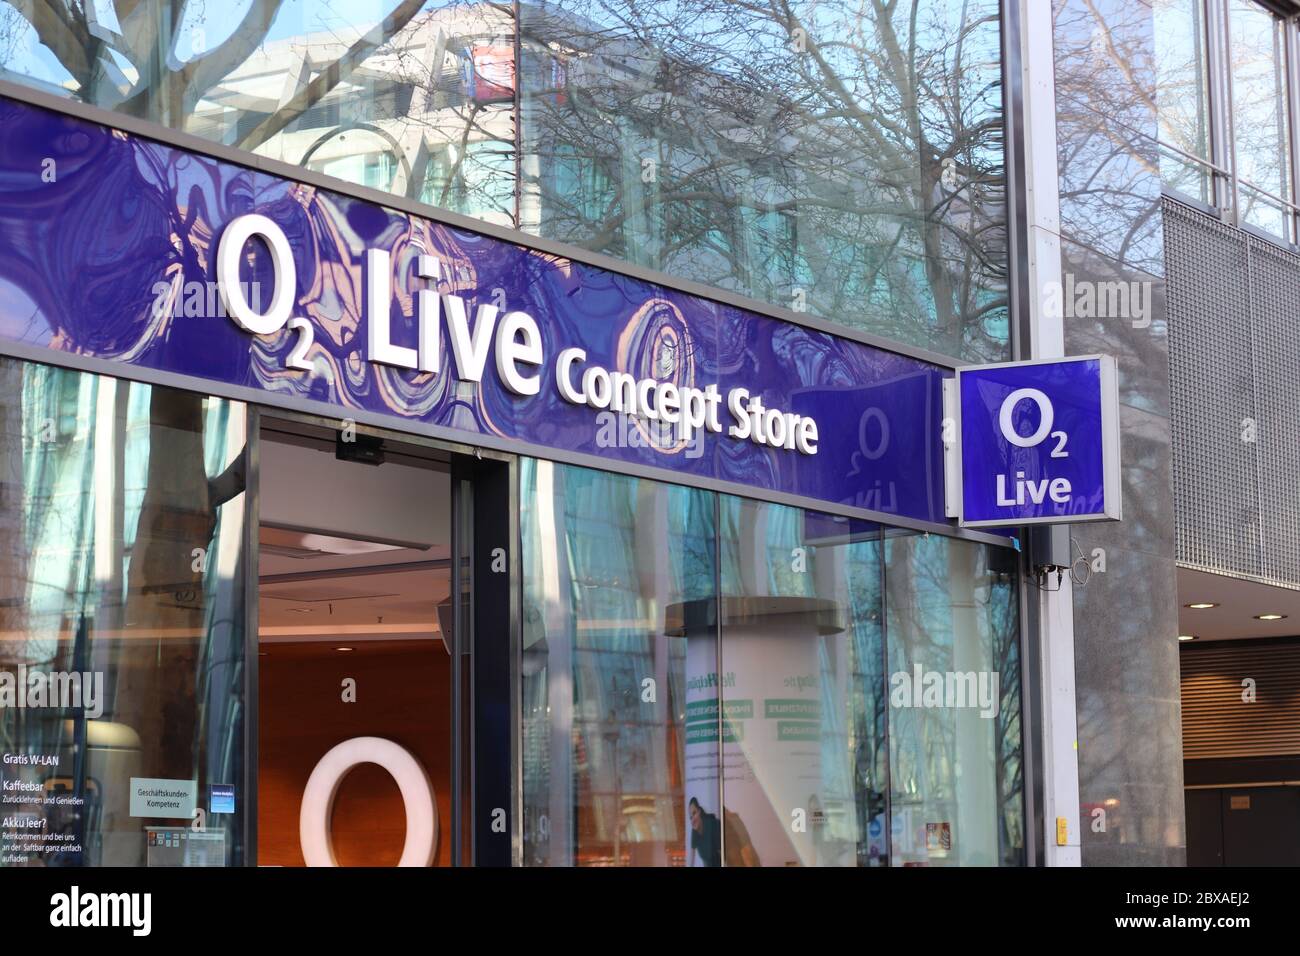 Berlino, Germania - 02 febbraio 2020: O2 Live Concept Store. O2 è una società europea di telecomunicazioni, specializzata nella telefonia mobile di proprietà di Tele Foto Stock